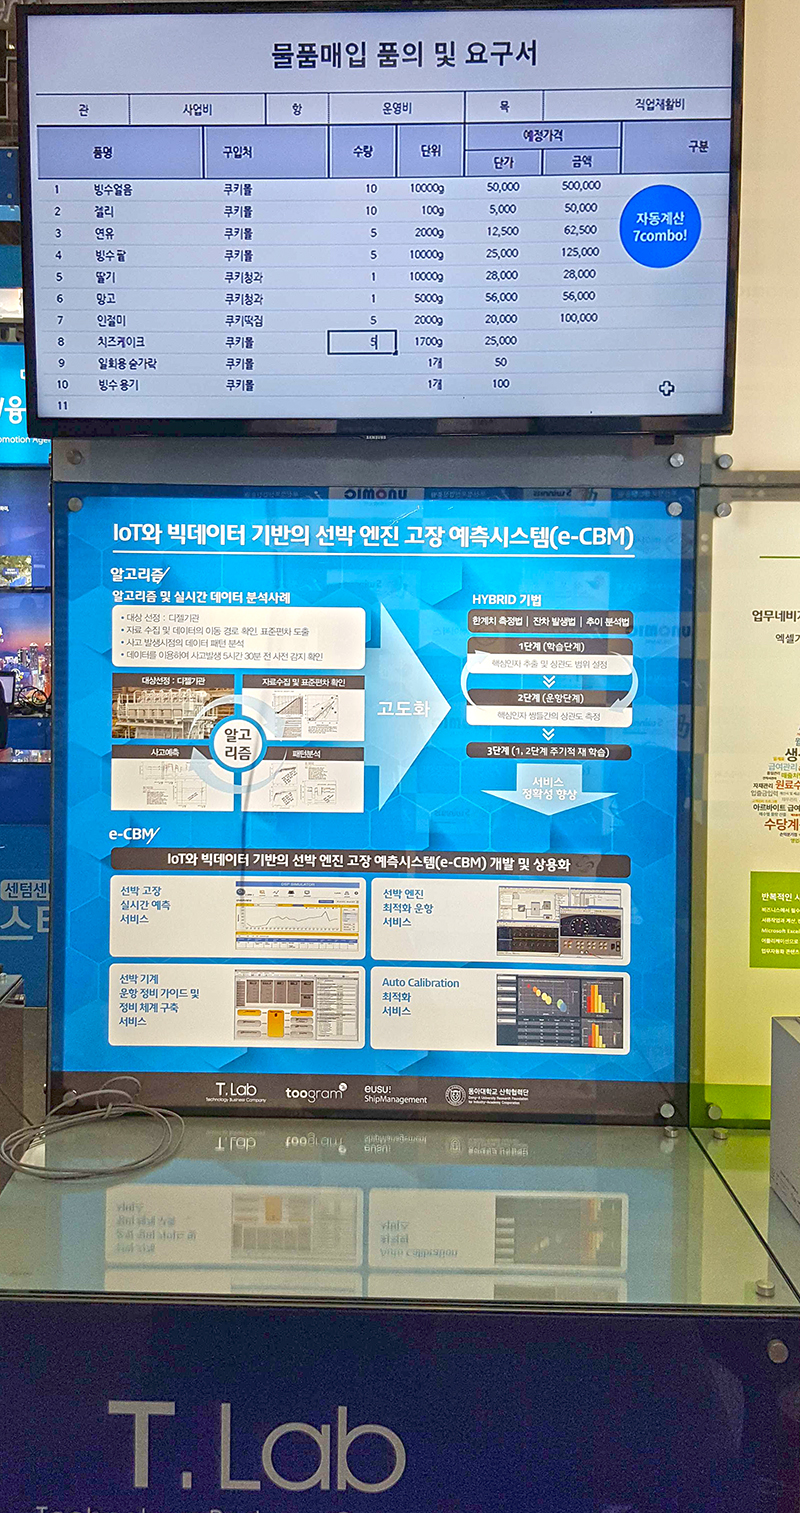 [공지] 2016 IT EXPO 업무자동화 엑셀쿠키